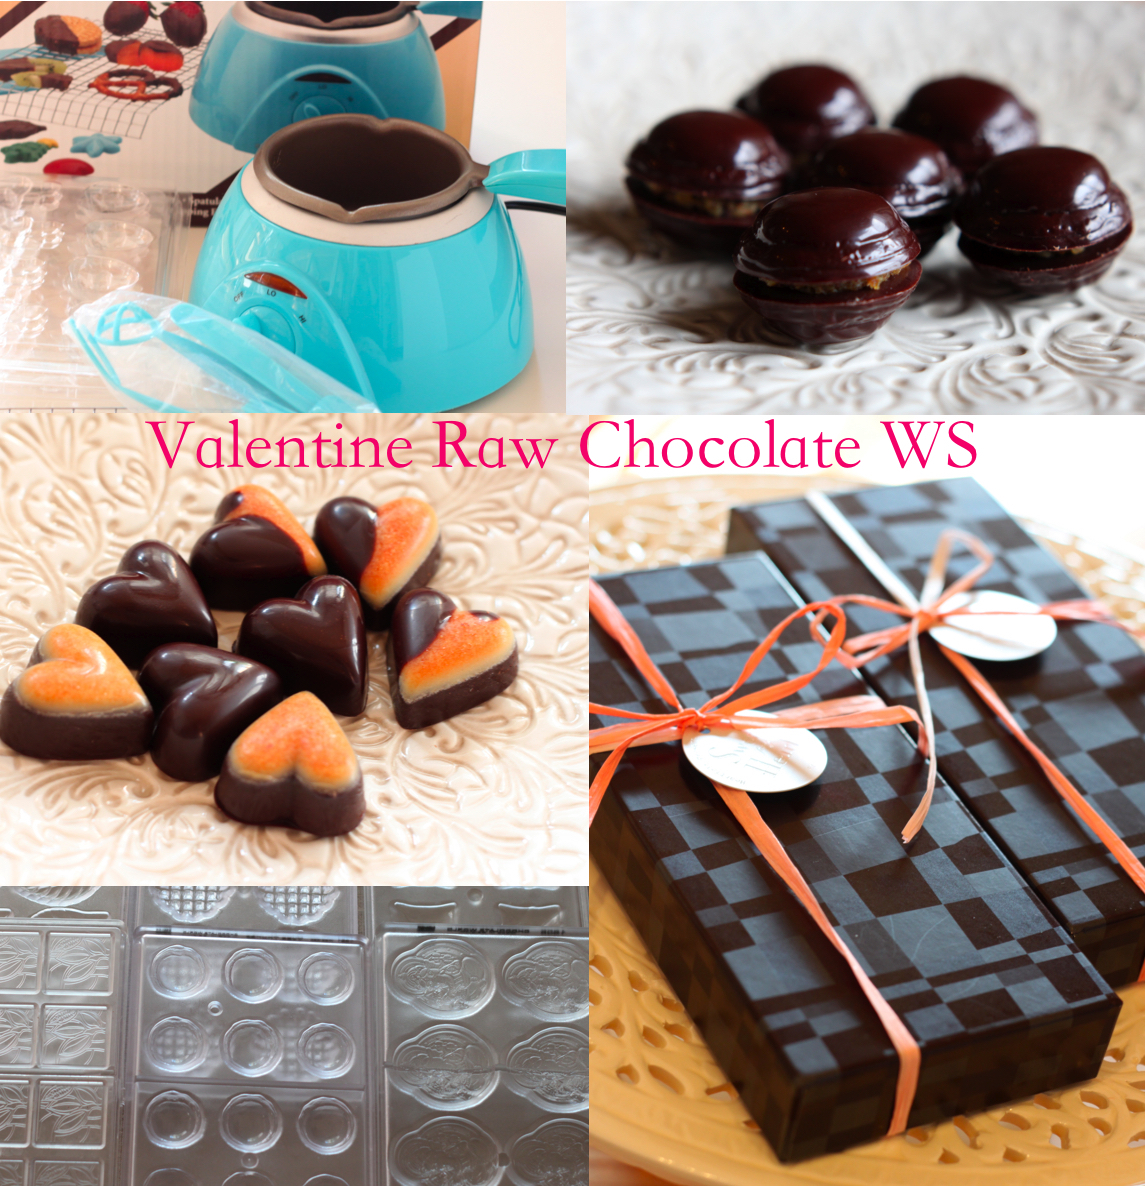 1/22 Valentine Raw Chocolate WS 定員になりました！